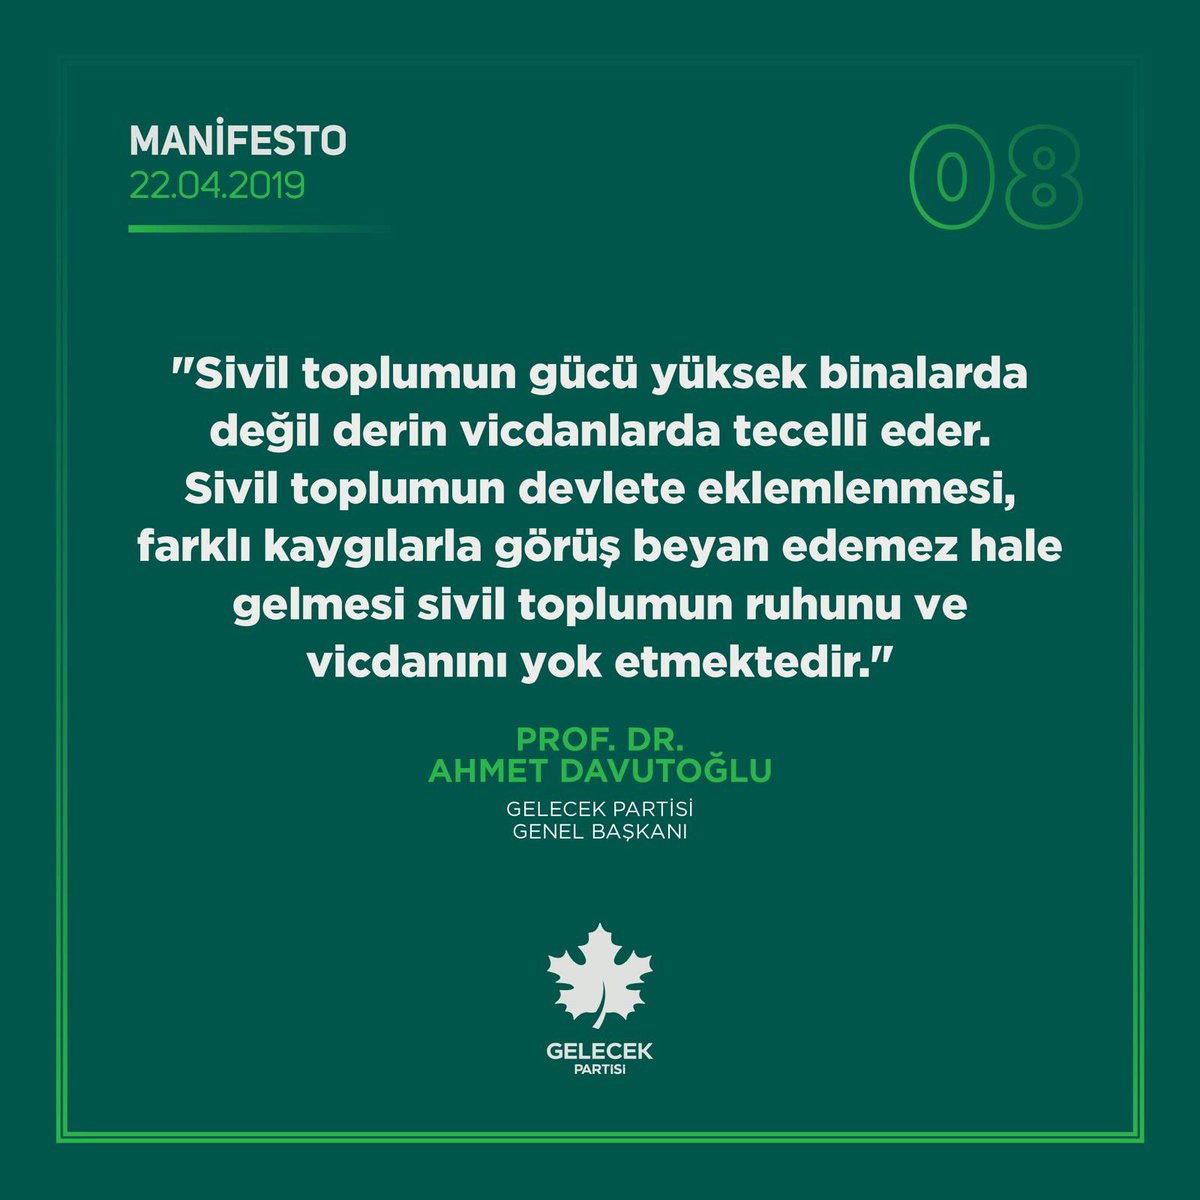 Vicdan kelimesi ne çok uzaklaştı oysa en yakın olması gereken yerden. Vicdanlı bir manifestodan…@Ahmet_Davutoglu